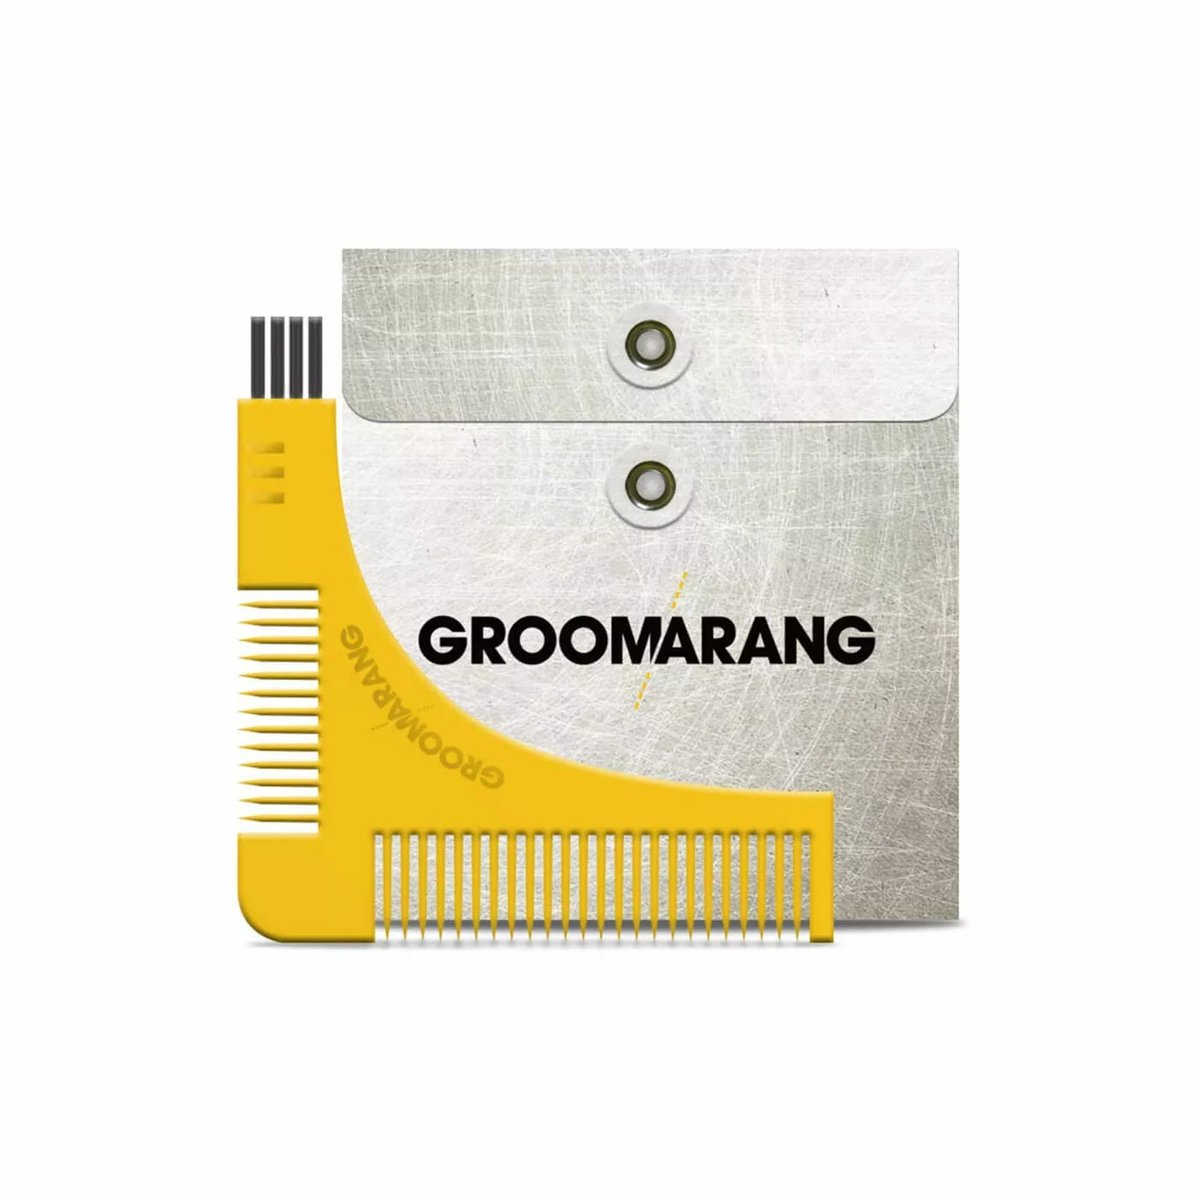 Groomarang-Beard-Shaping-Tool.4